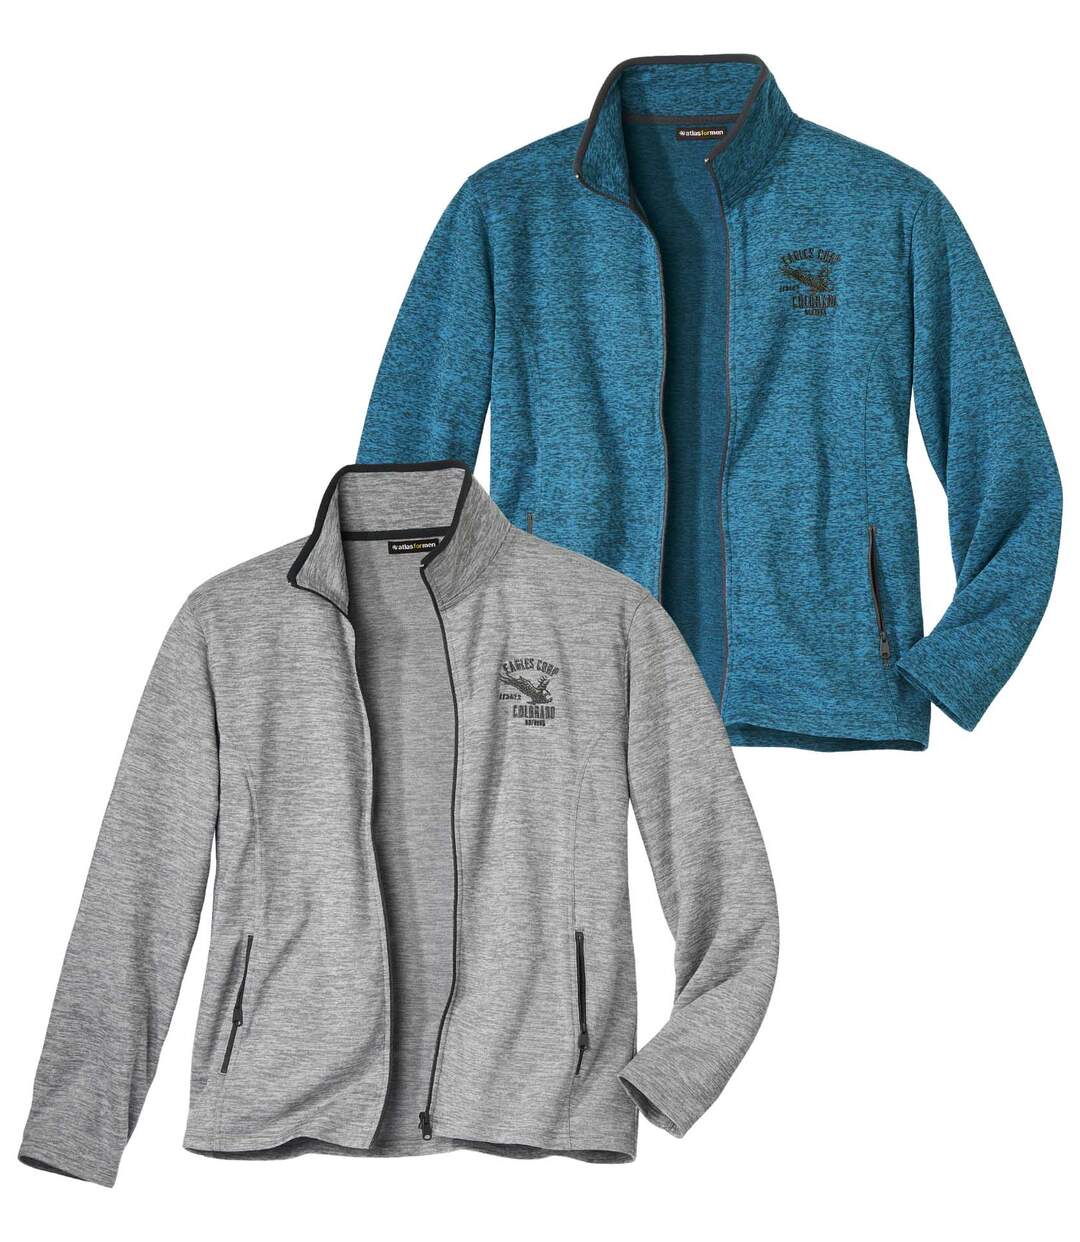 Pack of 2 Men's Brushed Fleece Jackets - Full Zip - Gray Blue Atlas For Men